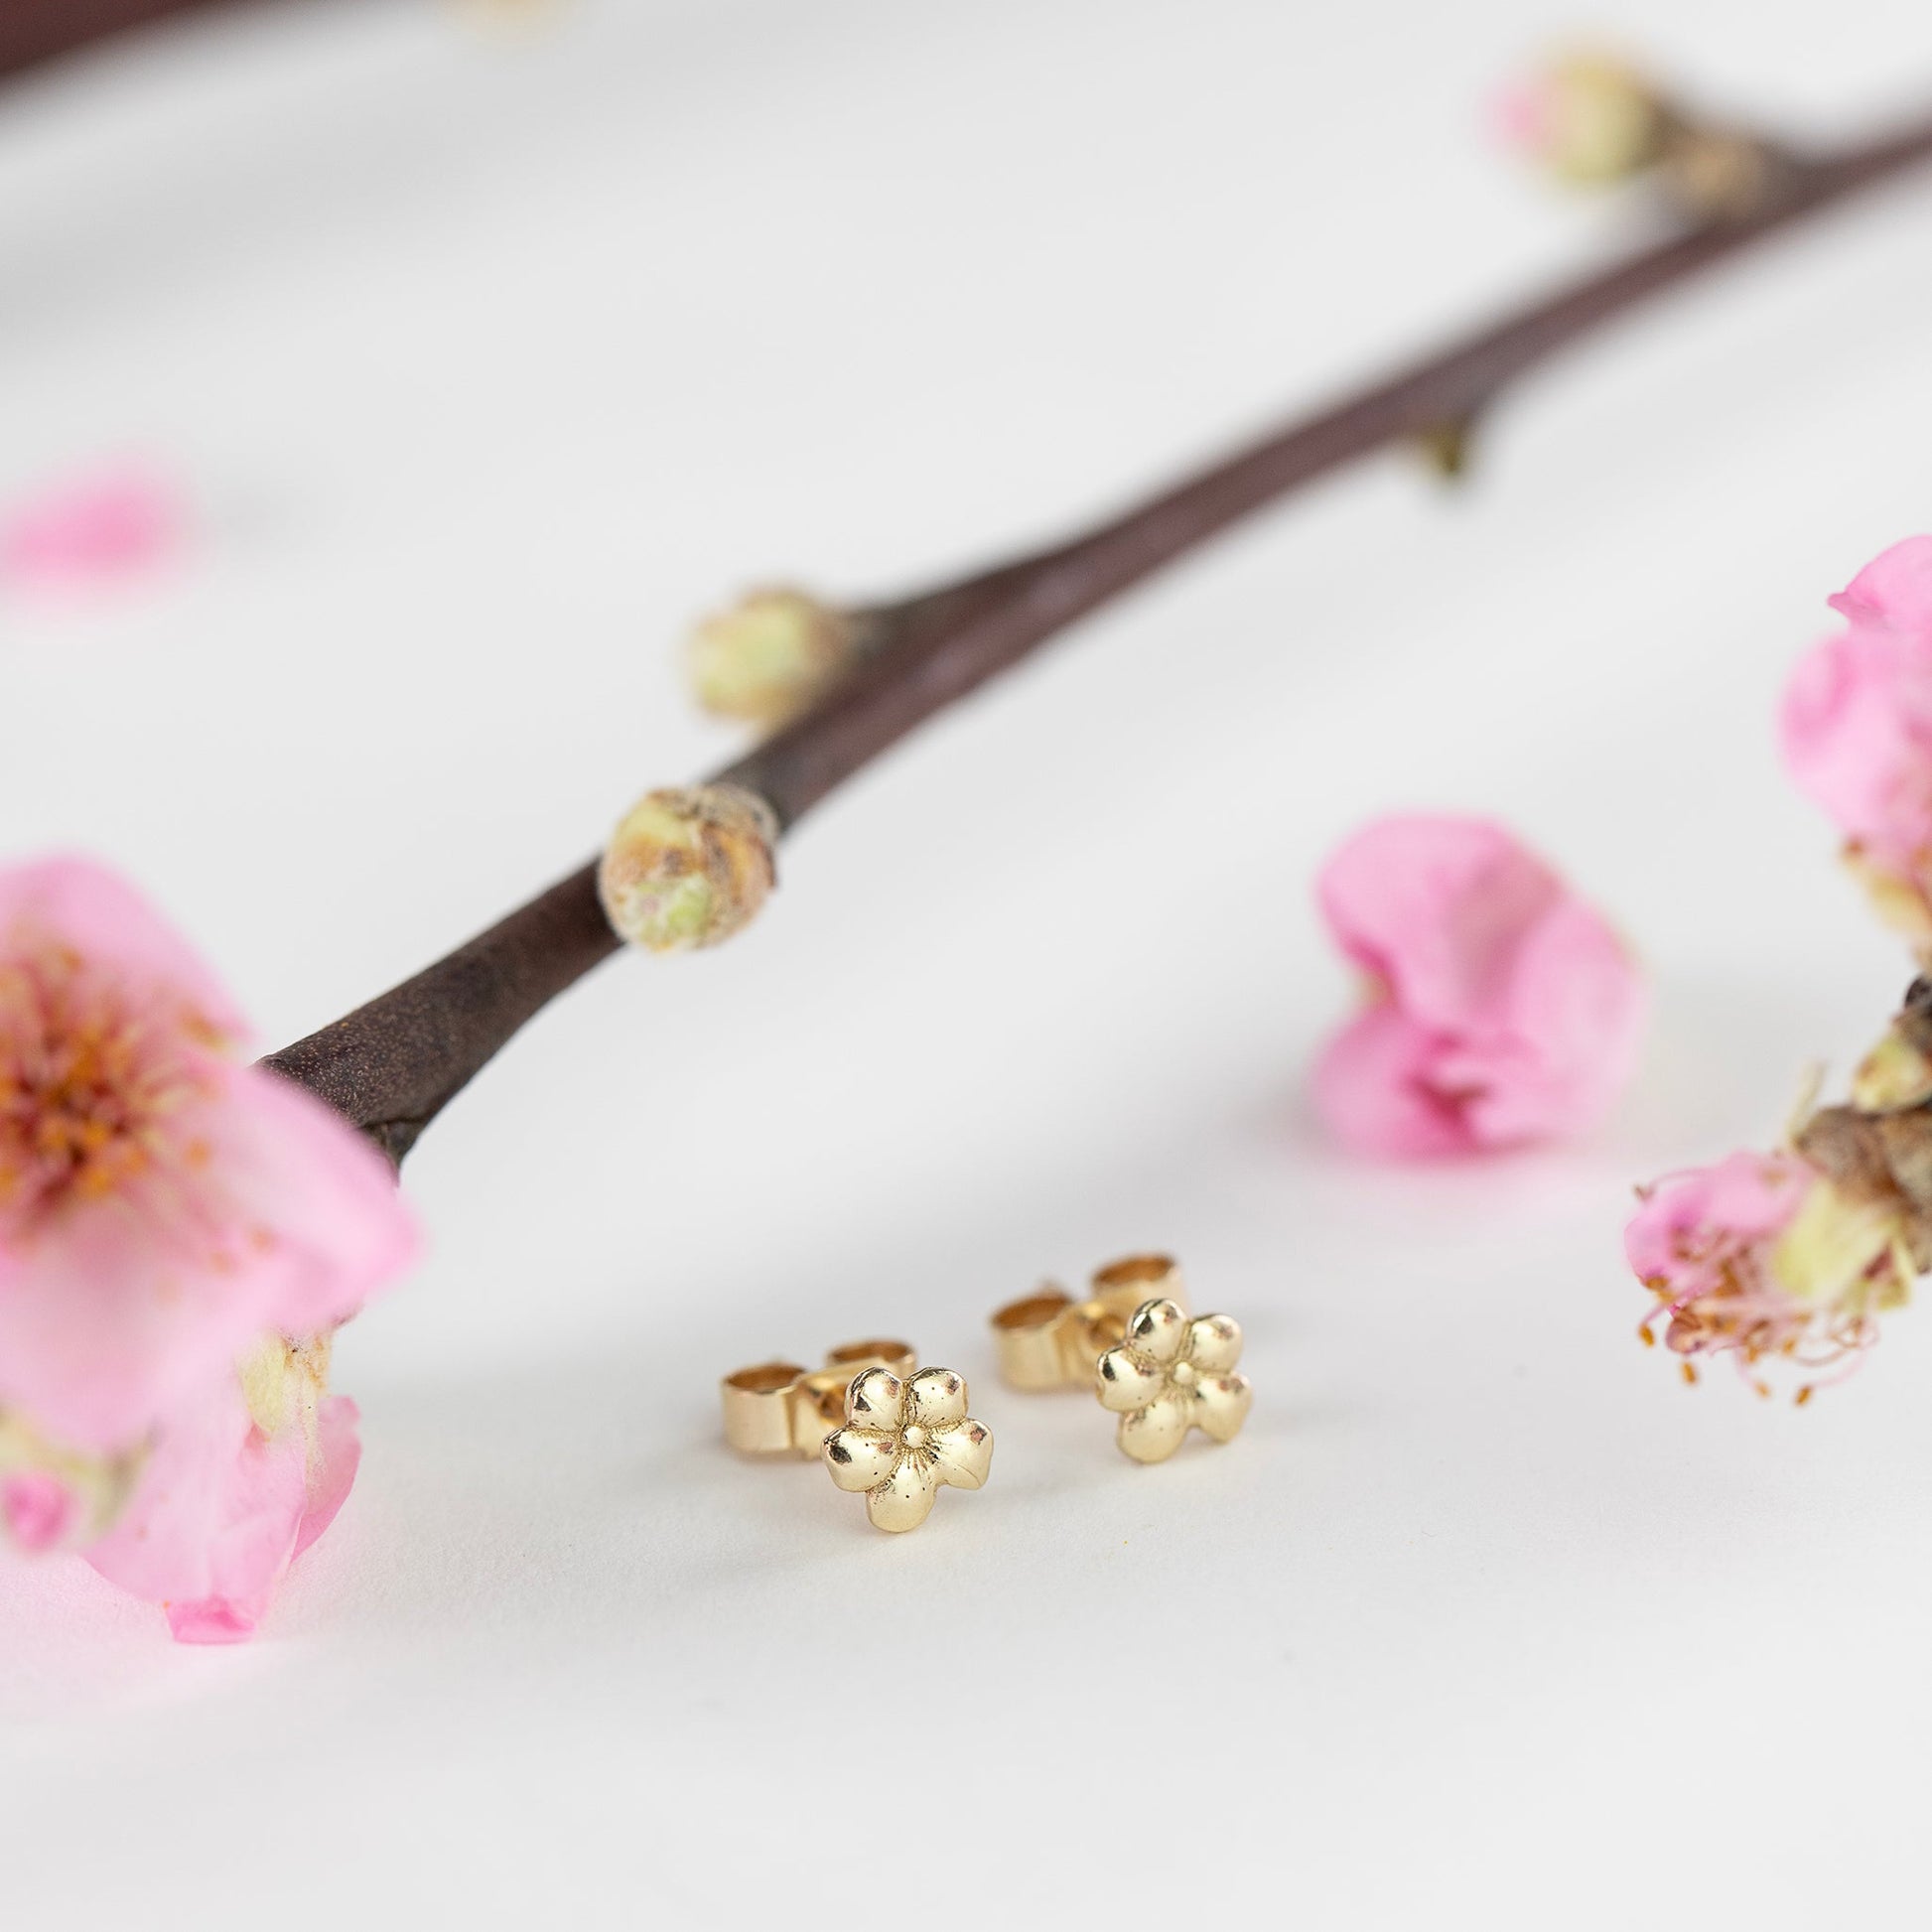 Cherry Blossom Stud Earrings - Luck - 9kt Gold